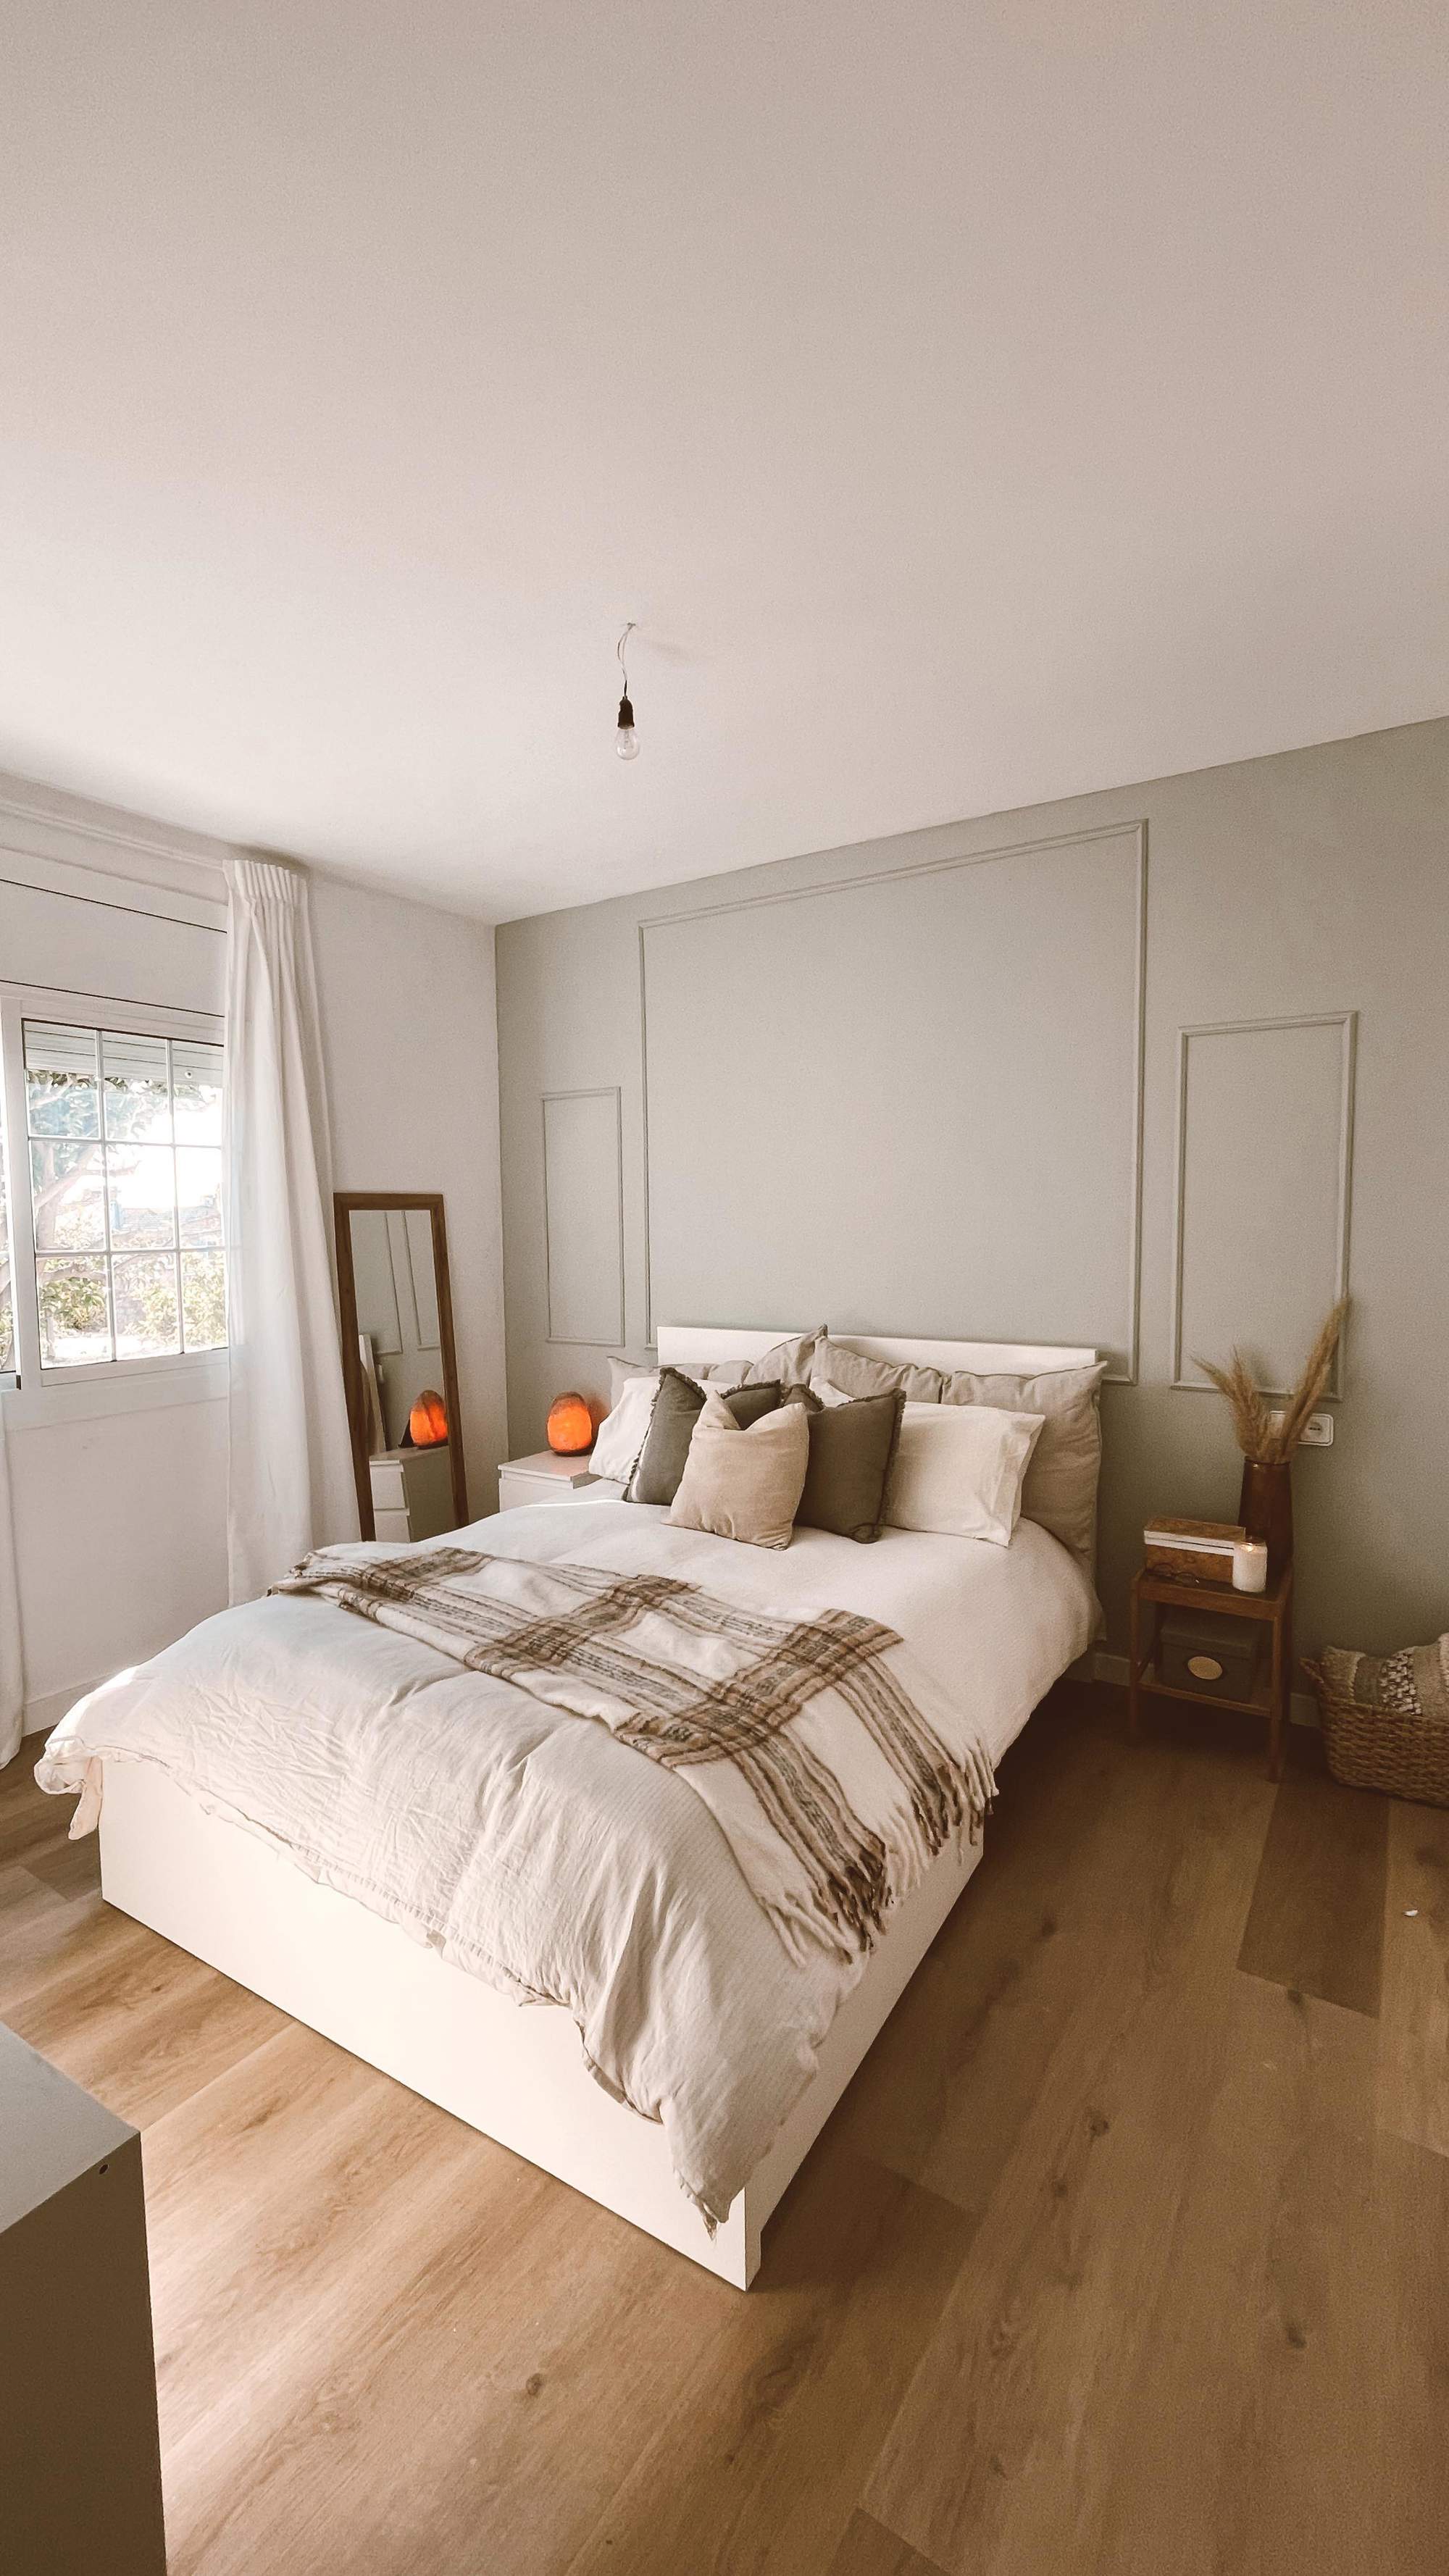 Dormitorio principal con cabecero verde original, cama con textiles otoñales y plaid de cuadros, y pavimento de madera.